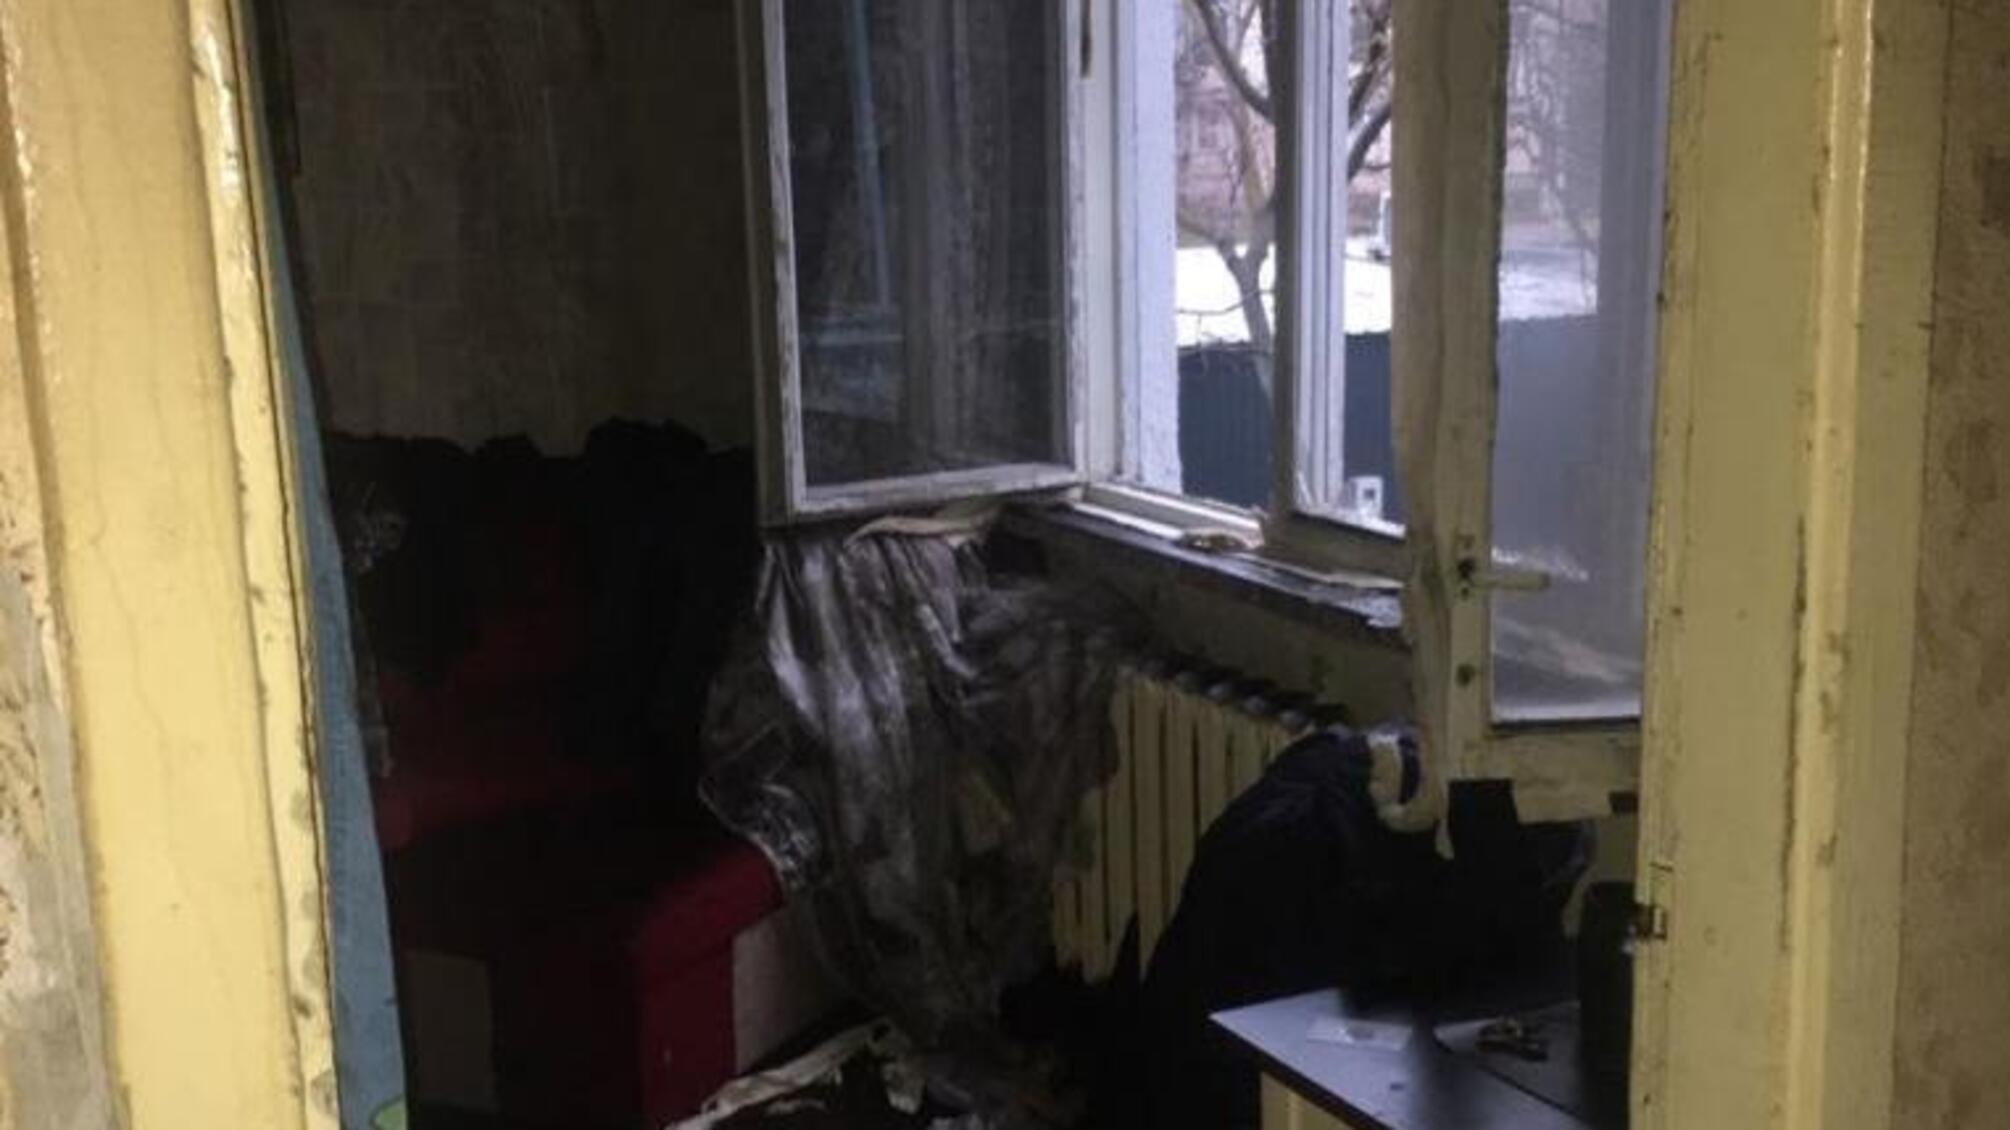 Правоохоронці розслідують обставини пожежі в Суворовському районі міста, в якій загинула ціла родина